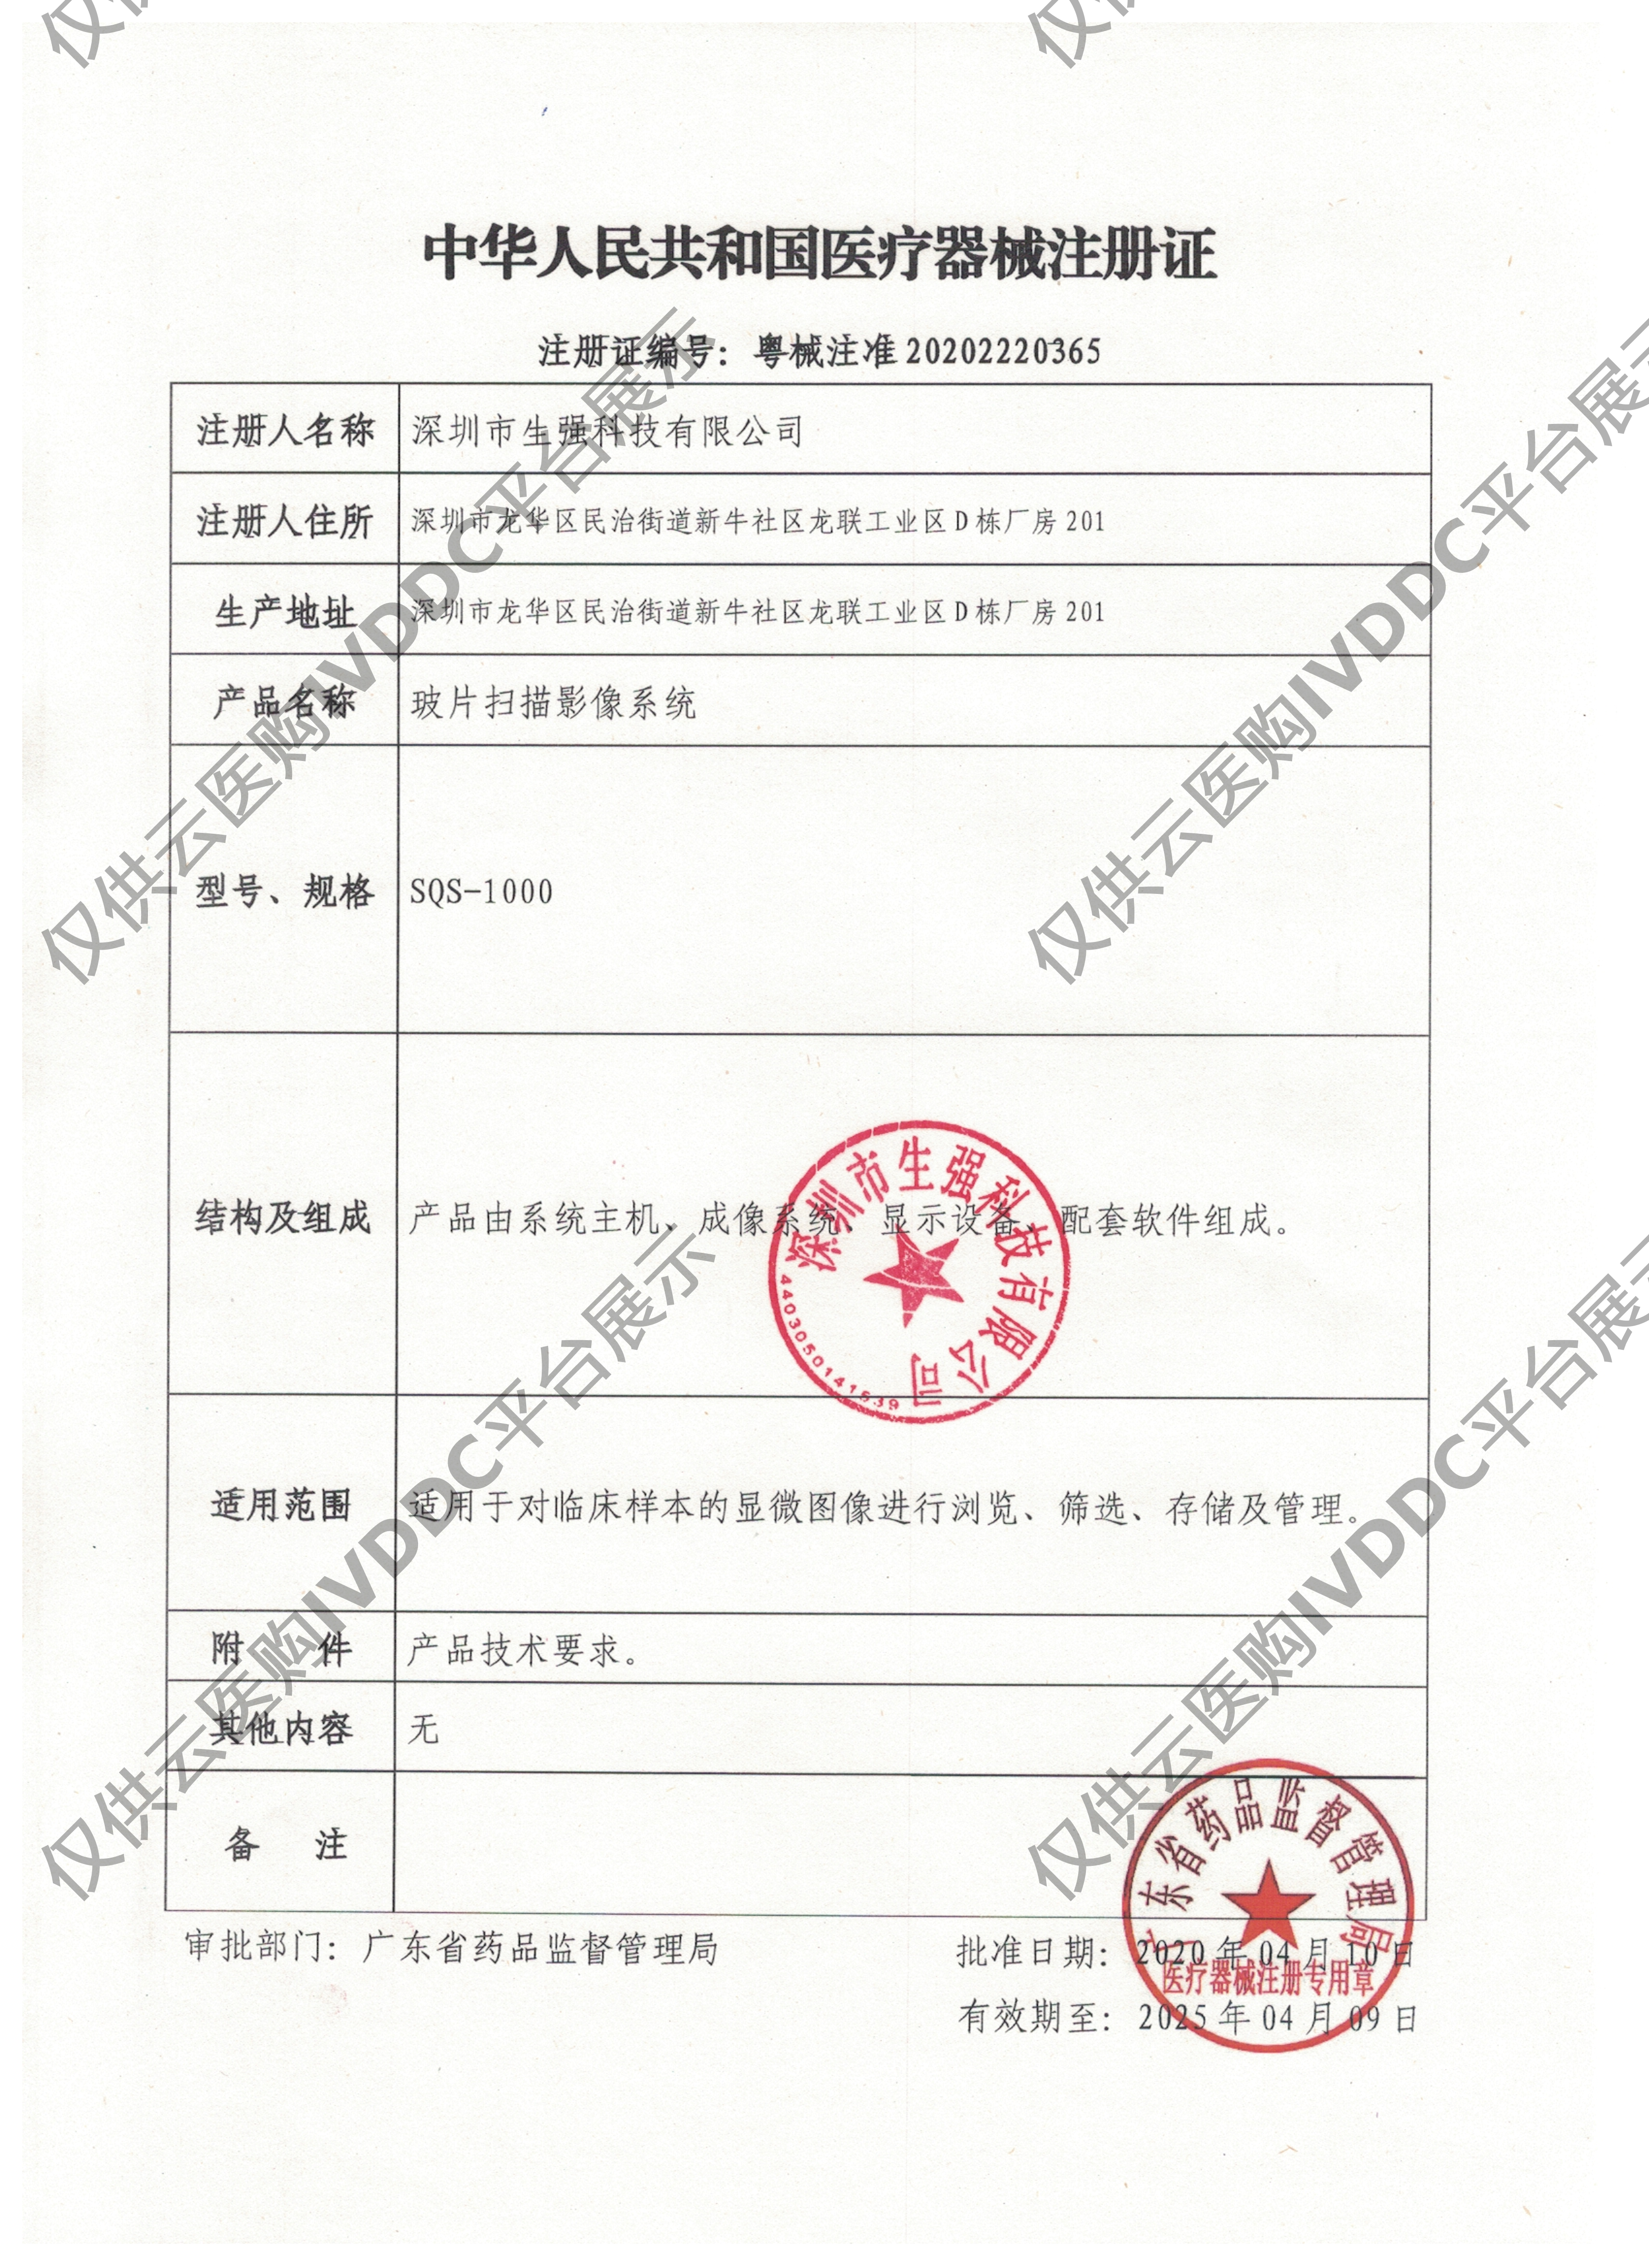 【生强】玻片扫描影像系统 SQSL-510注册证